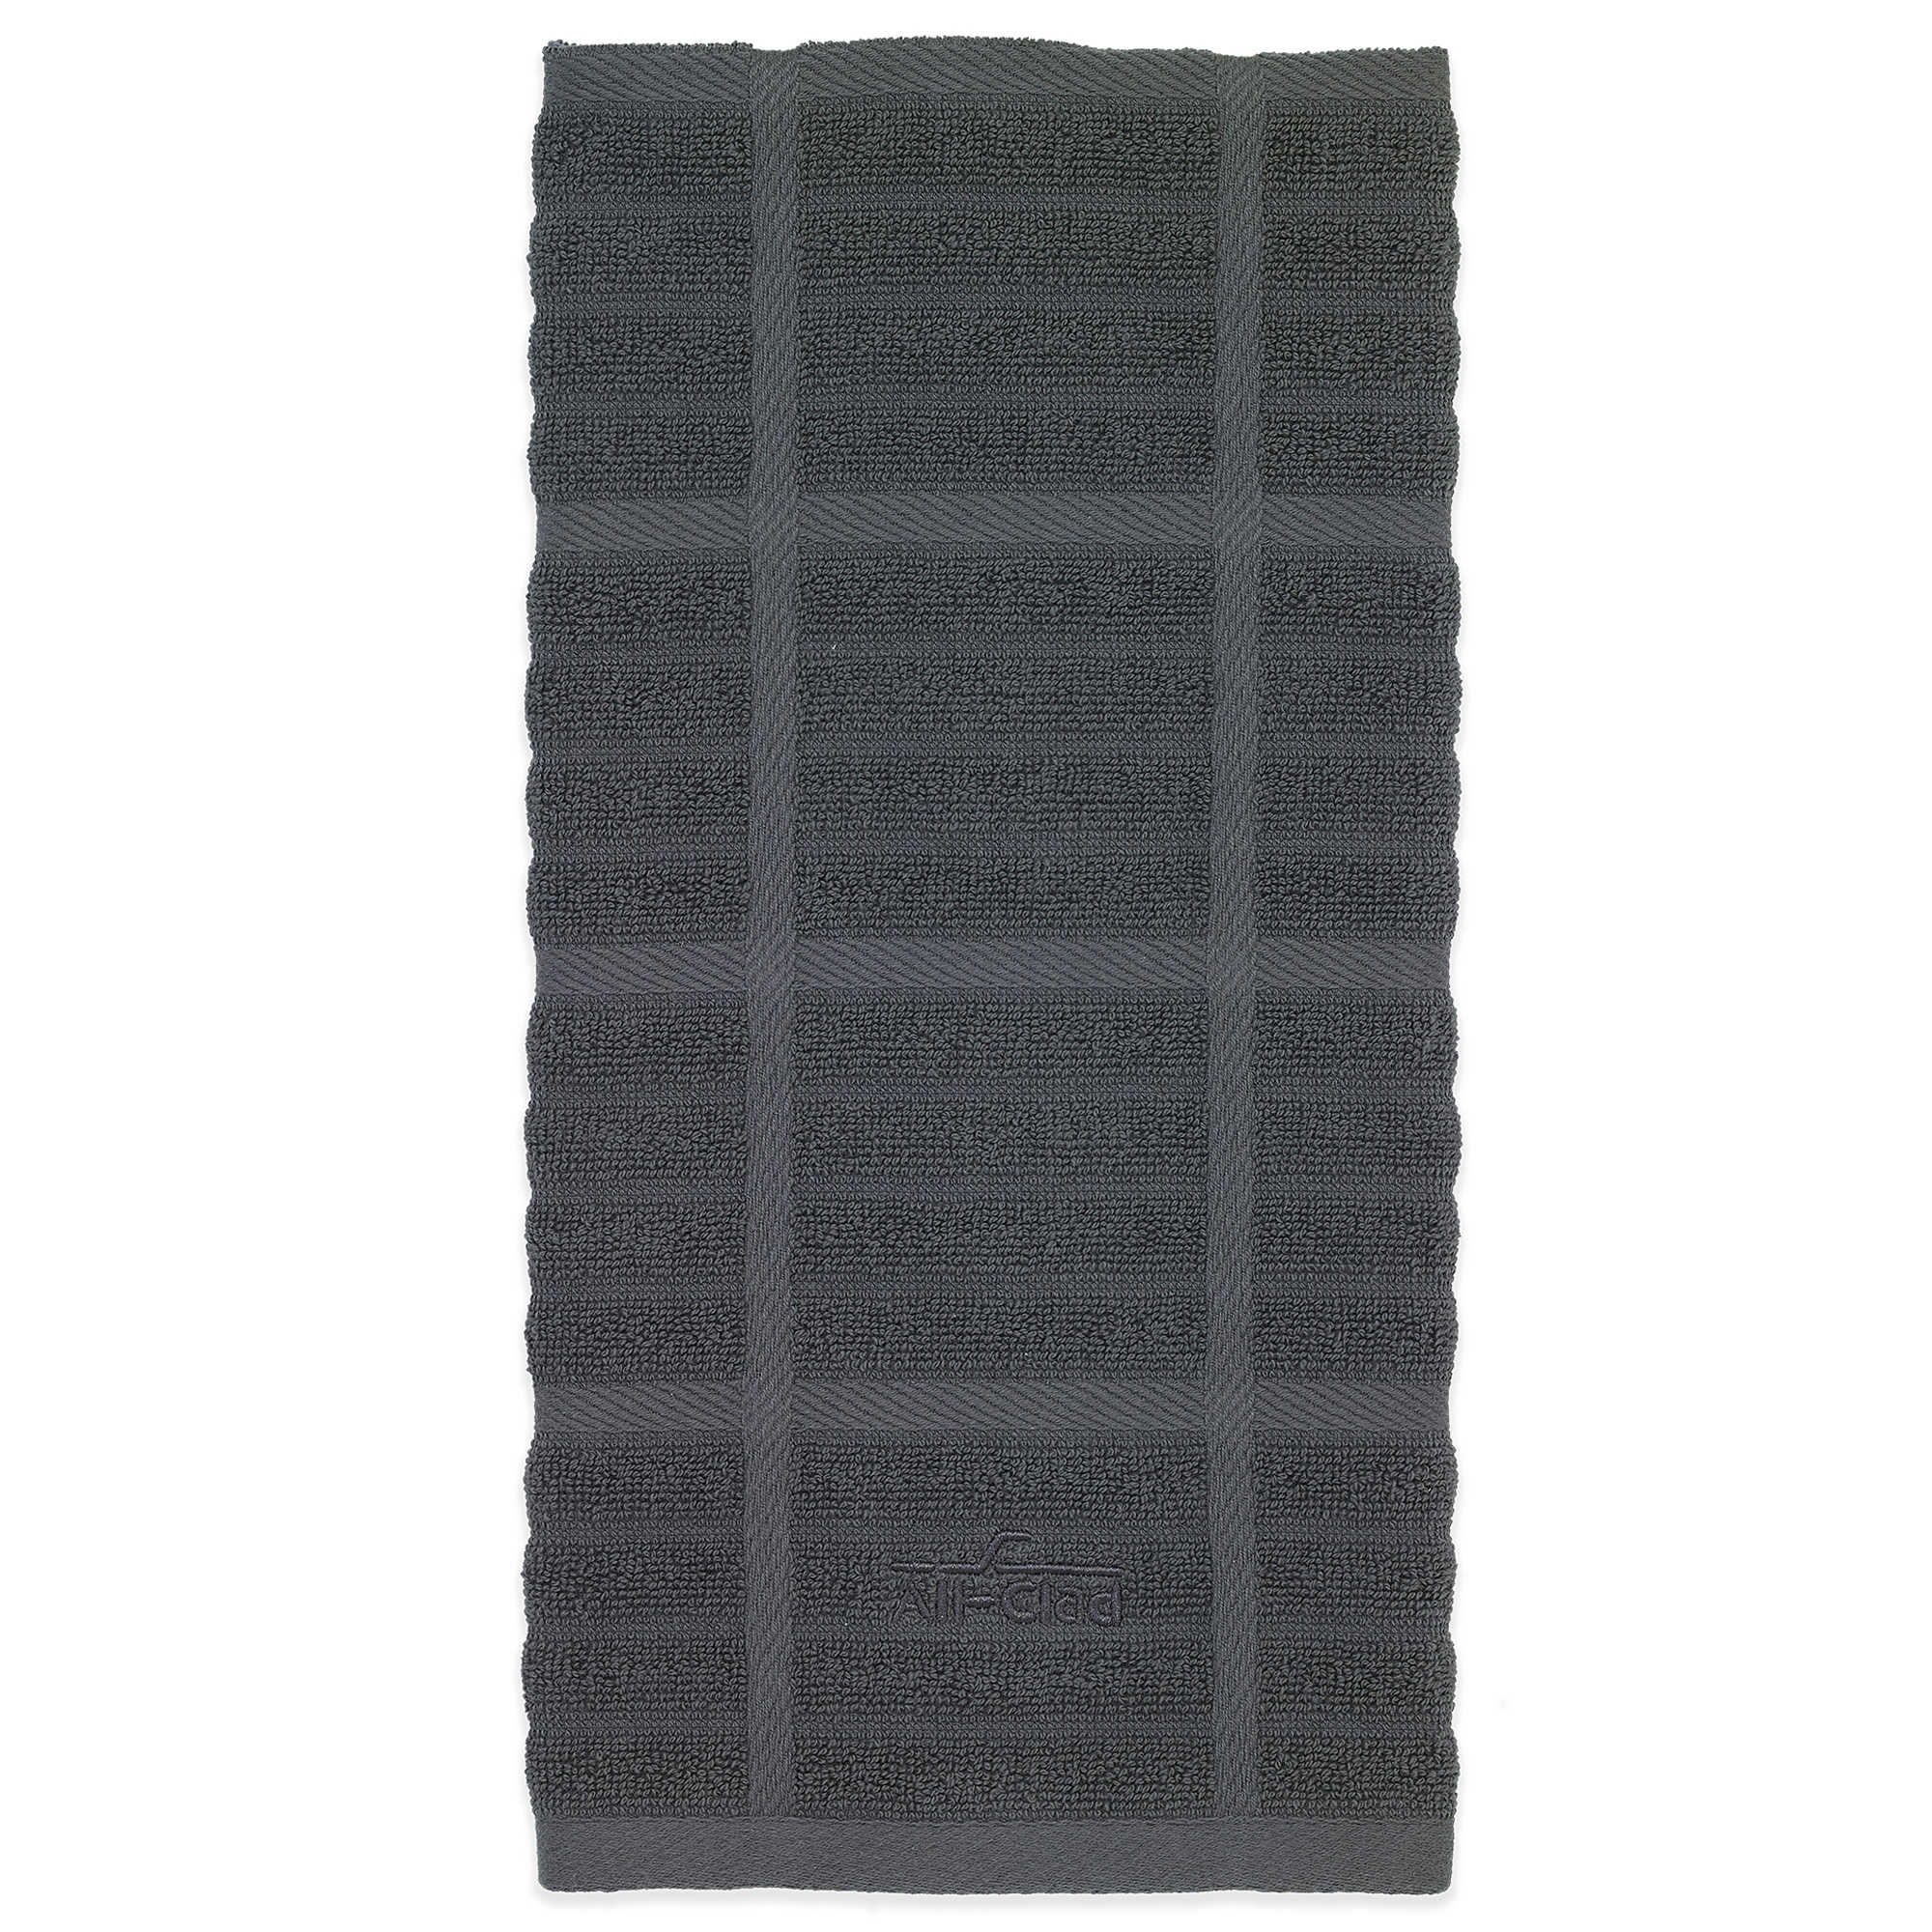 Umbra Ribbon 'Ribbon' Paper Towel Holder 7x13.6 (Black)